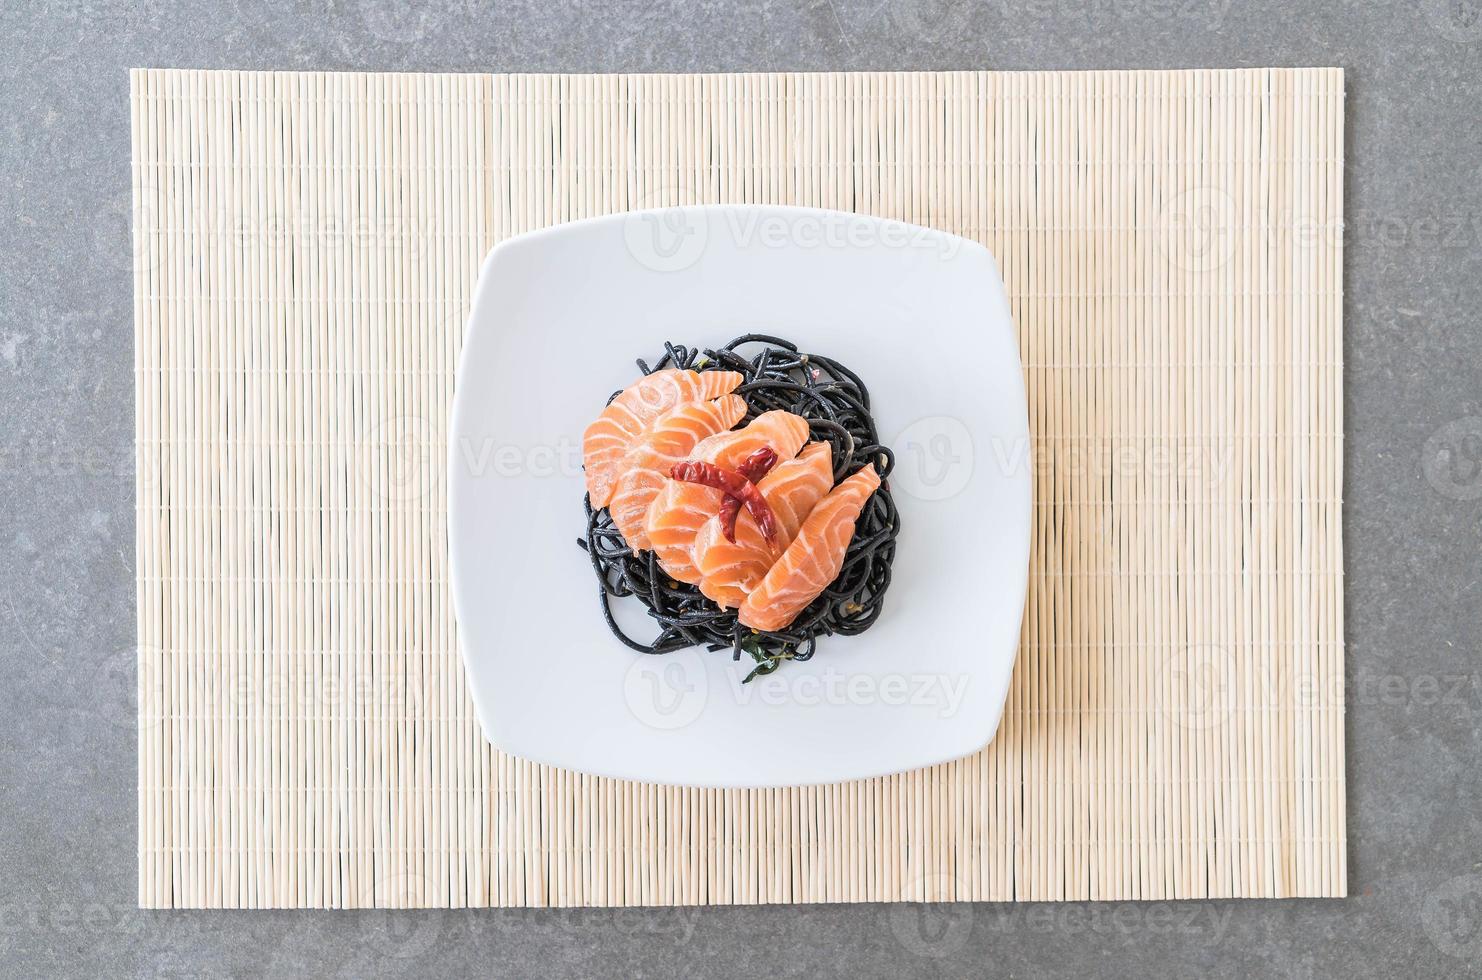 spaghettis noirs épicés au saumon - style fusion food photo